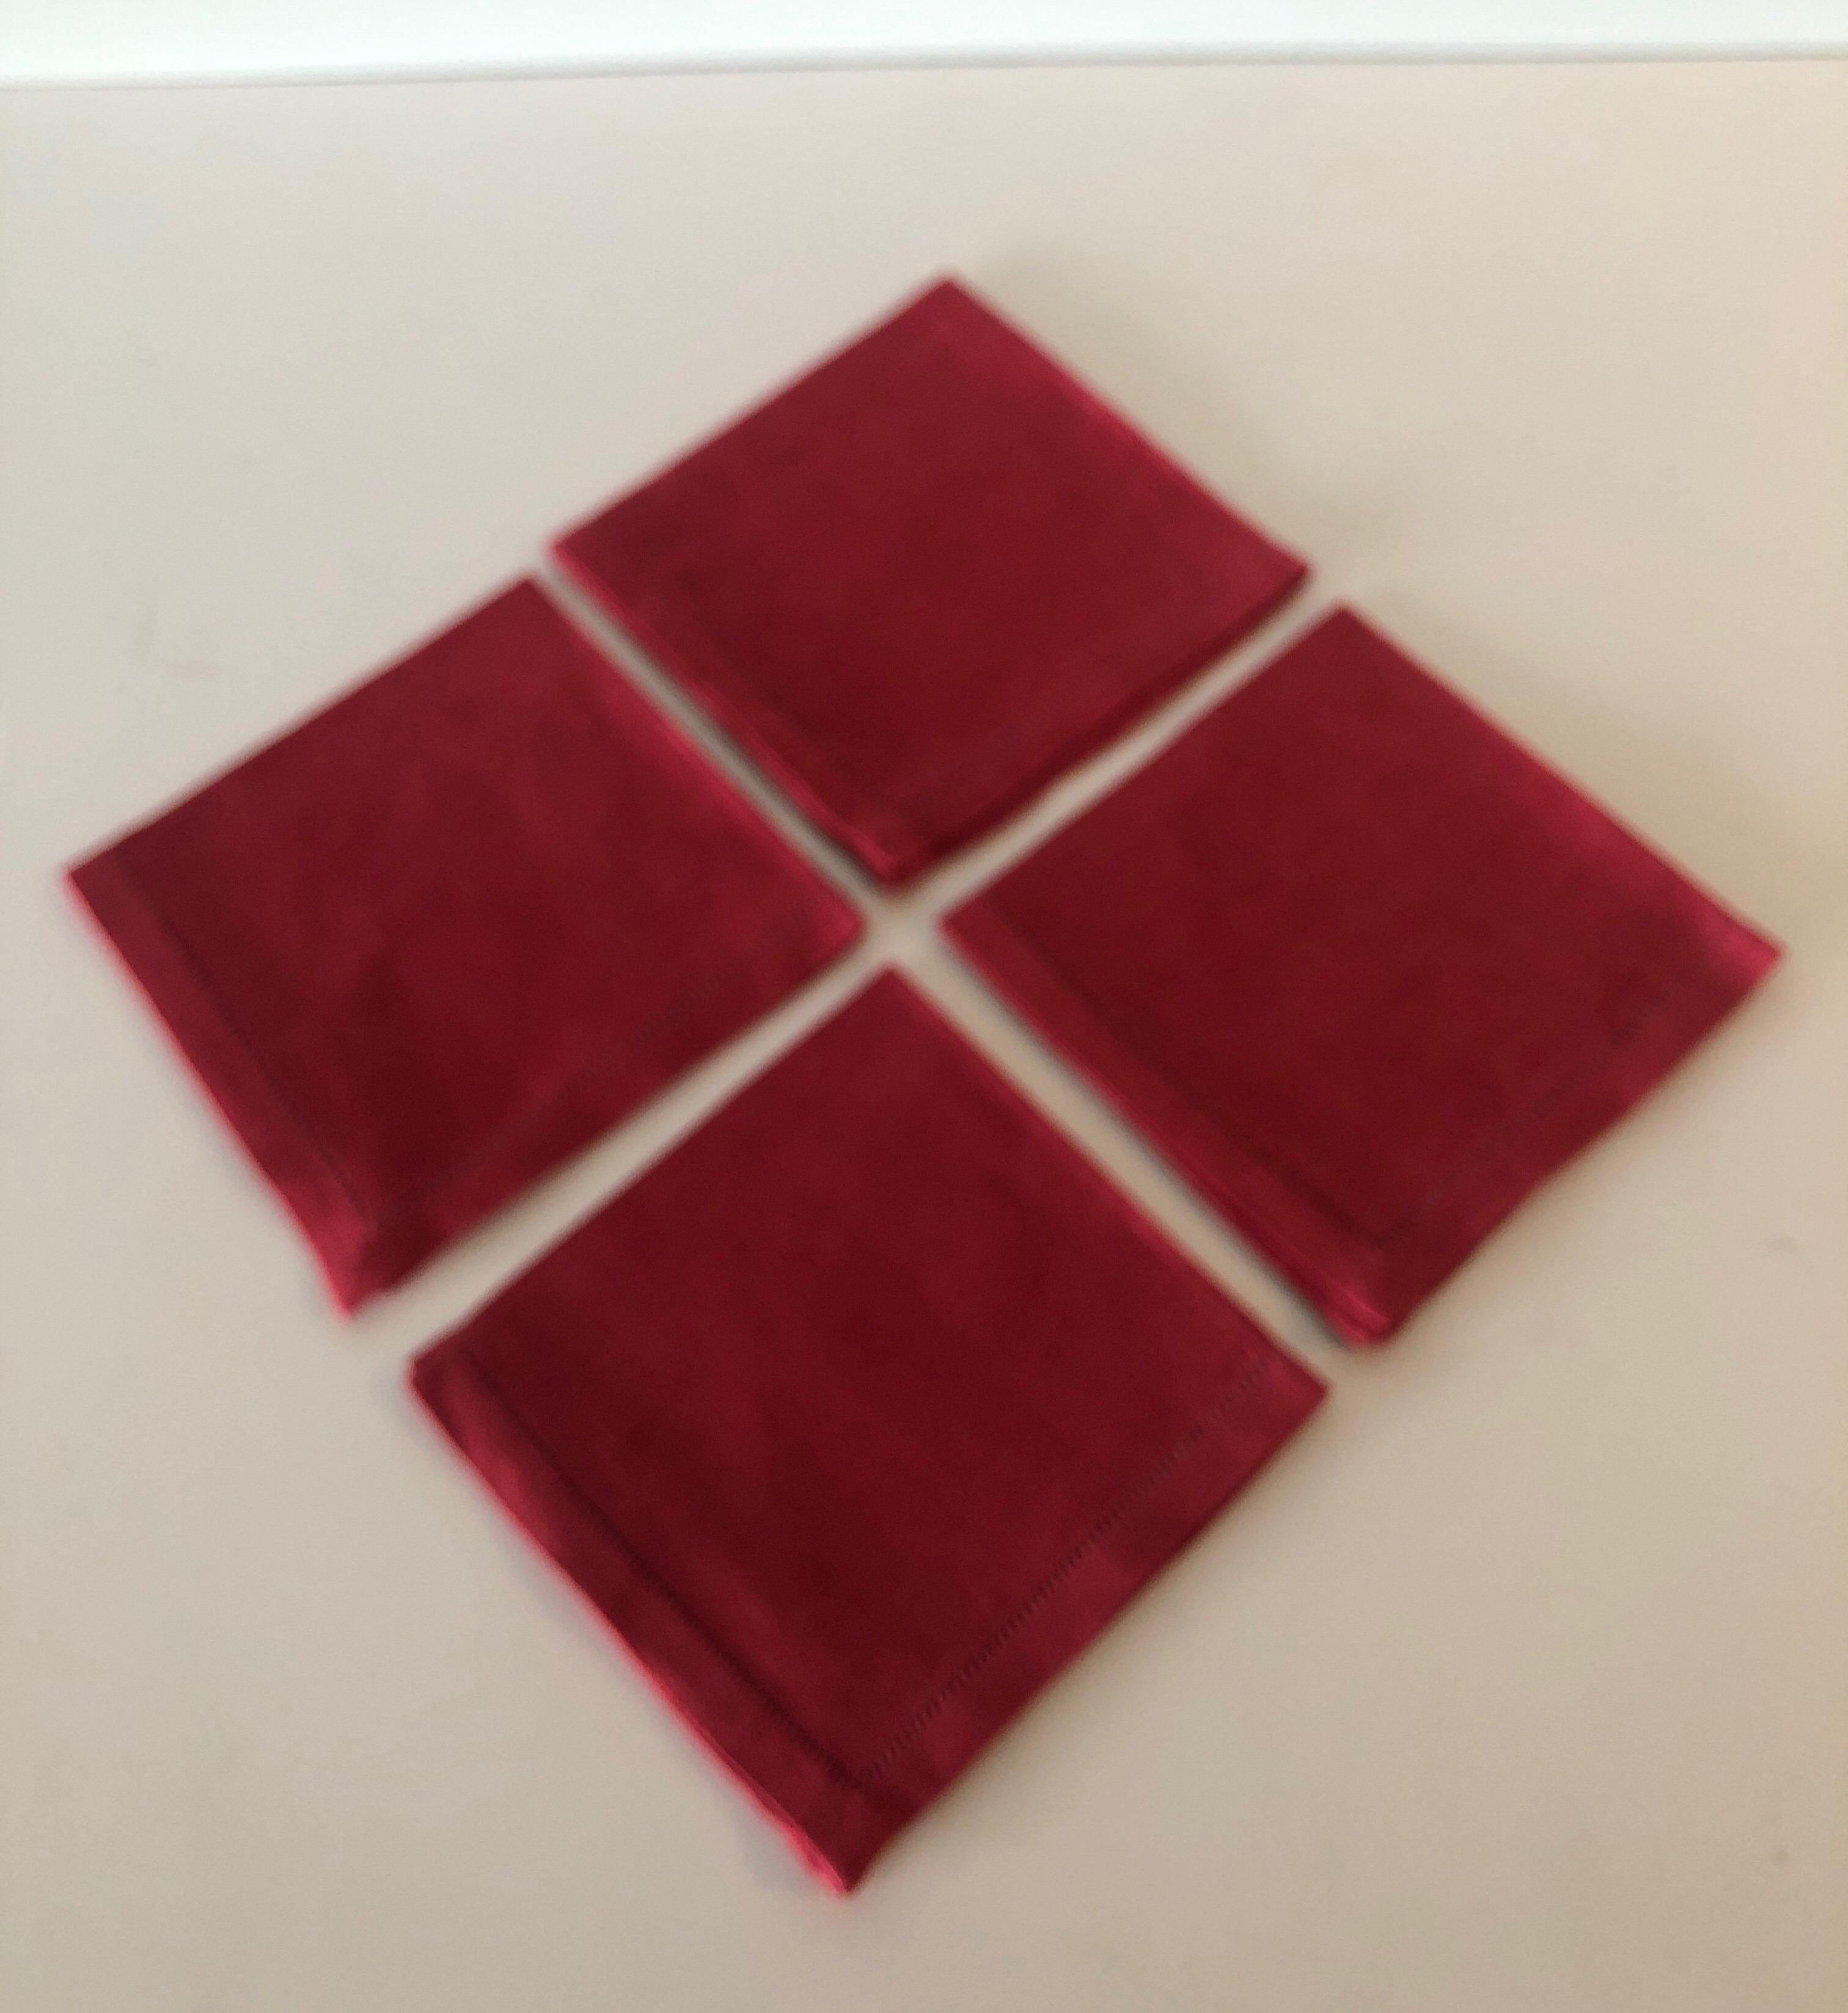 Vintage Set of (4) red cocktail linen napkins.
Size: 10